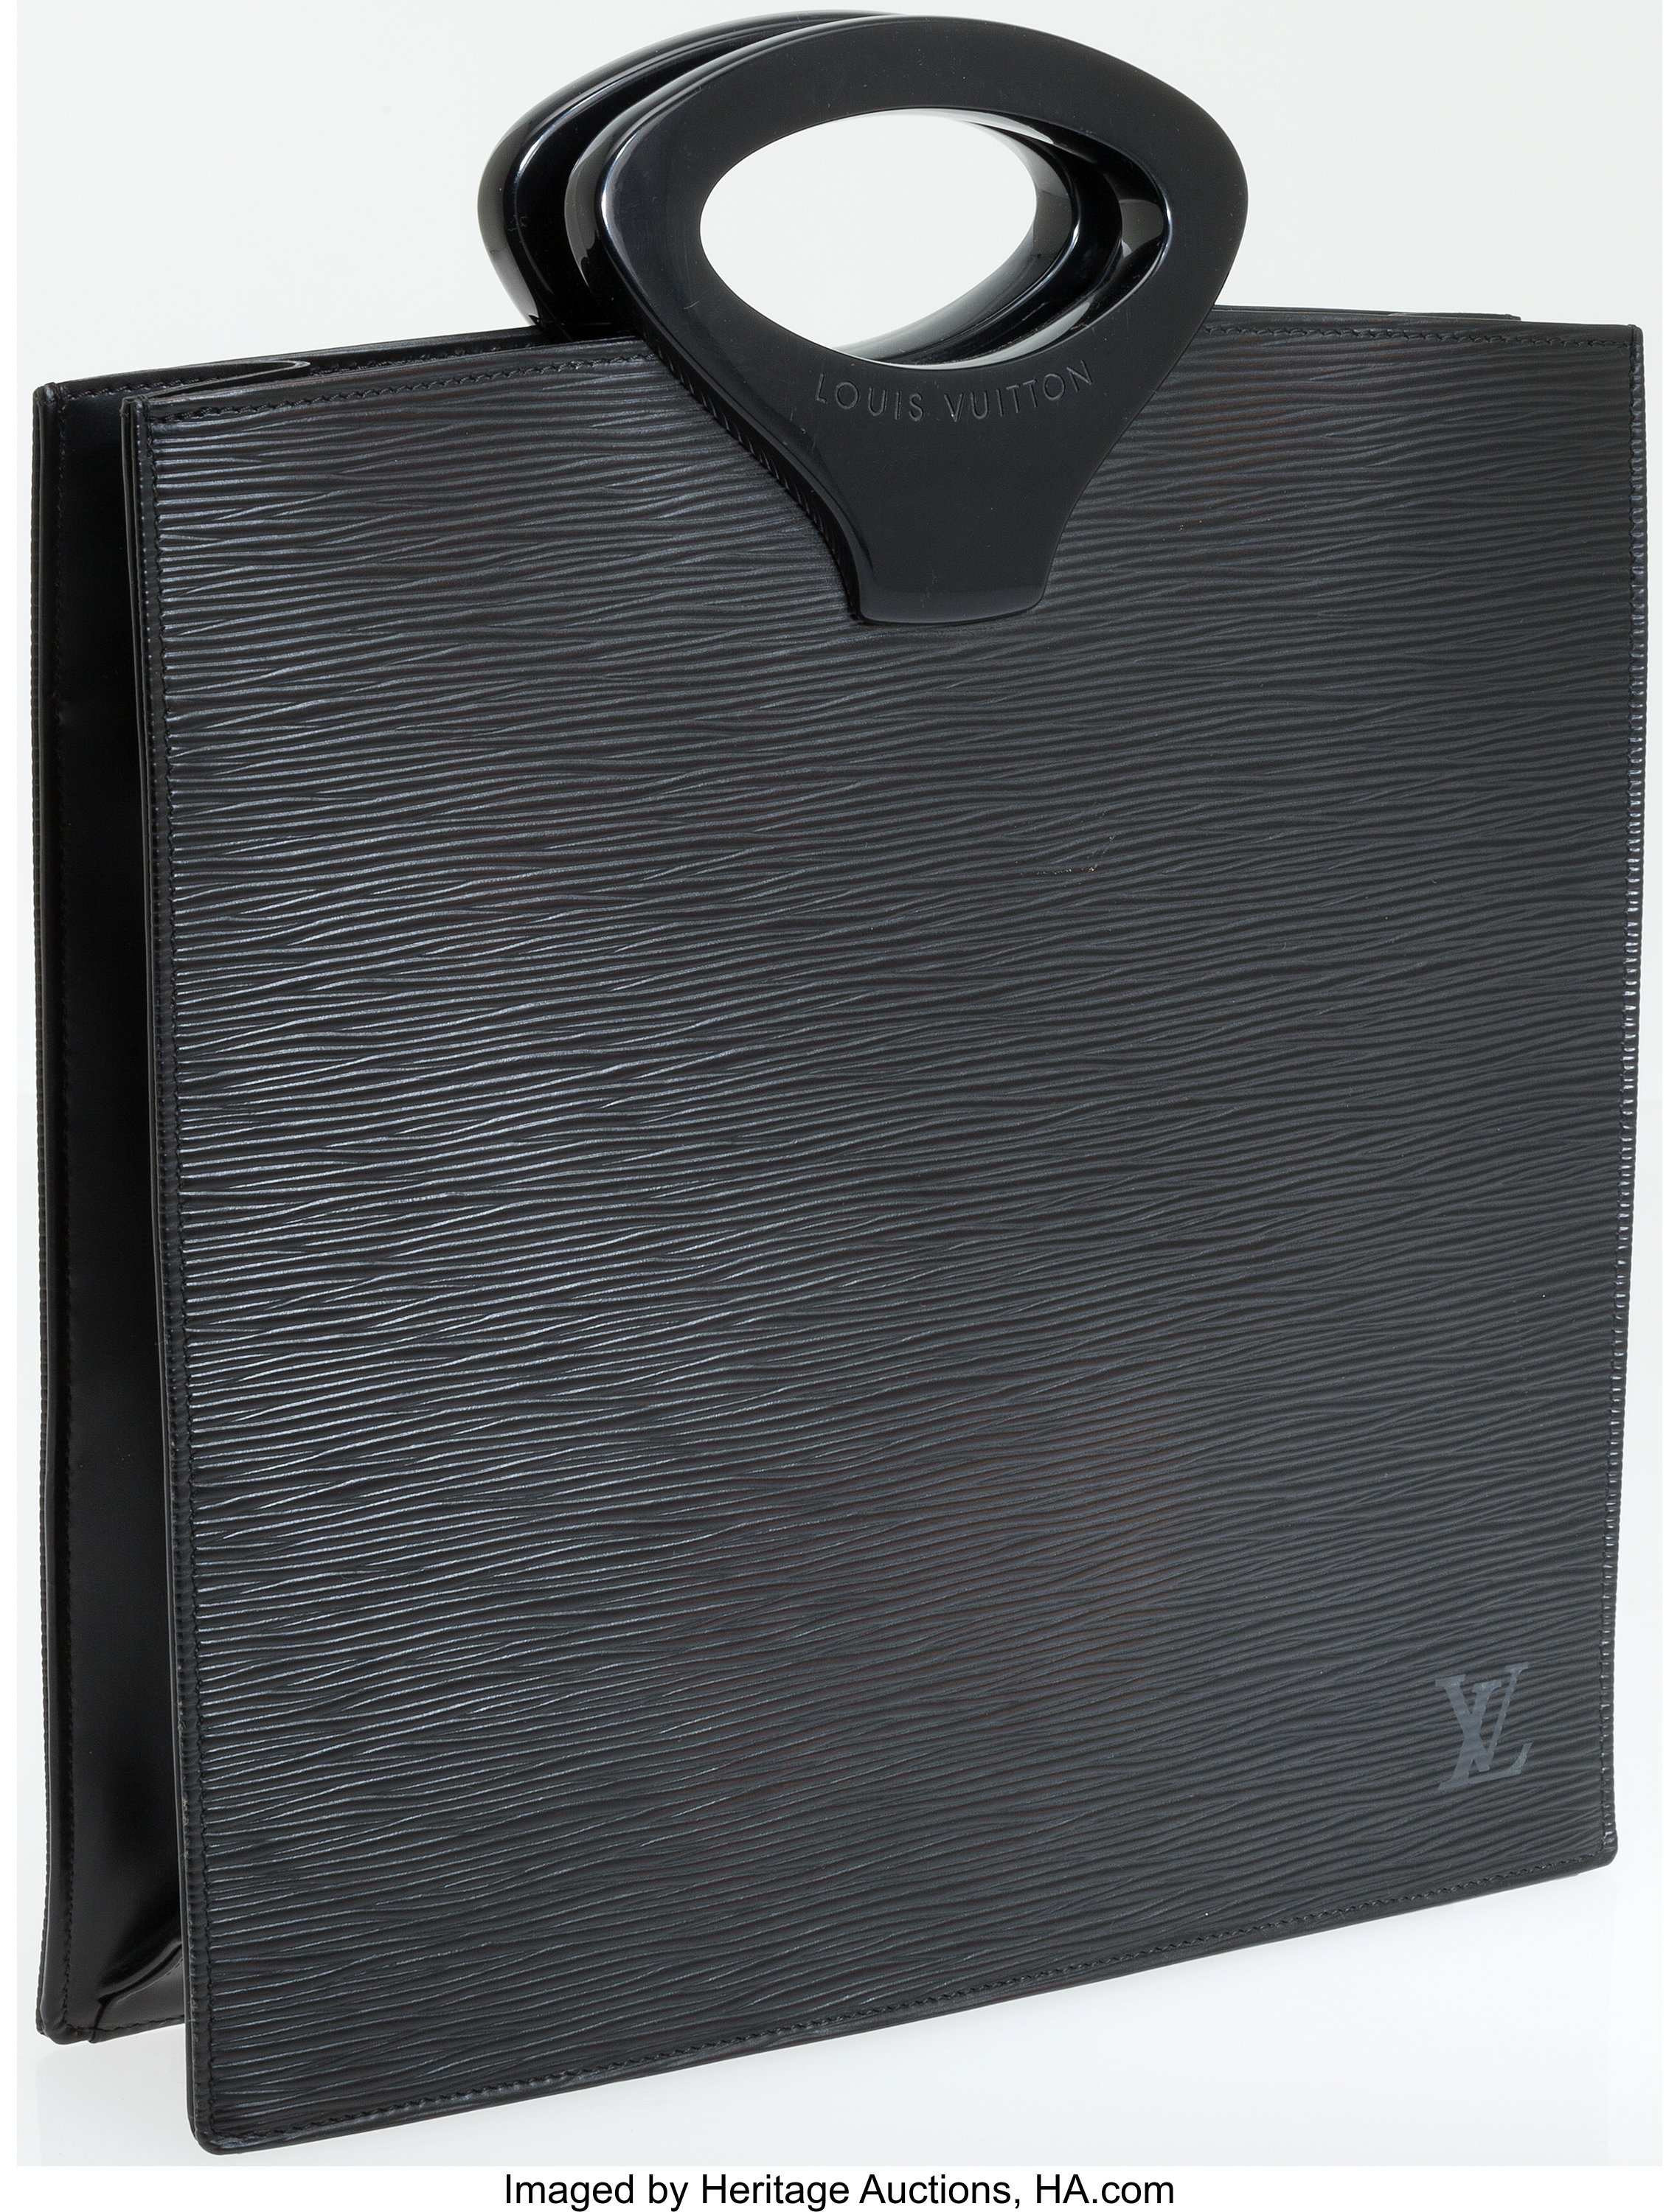 Louis Vuitton Pont Neuf NM Handbag Epi Leather PM Neutral